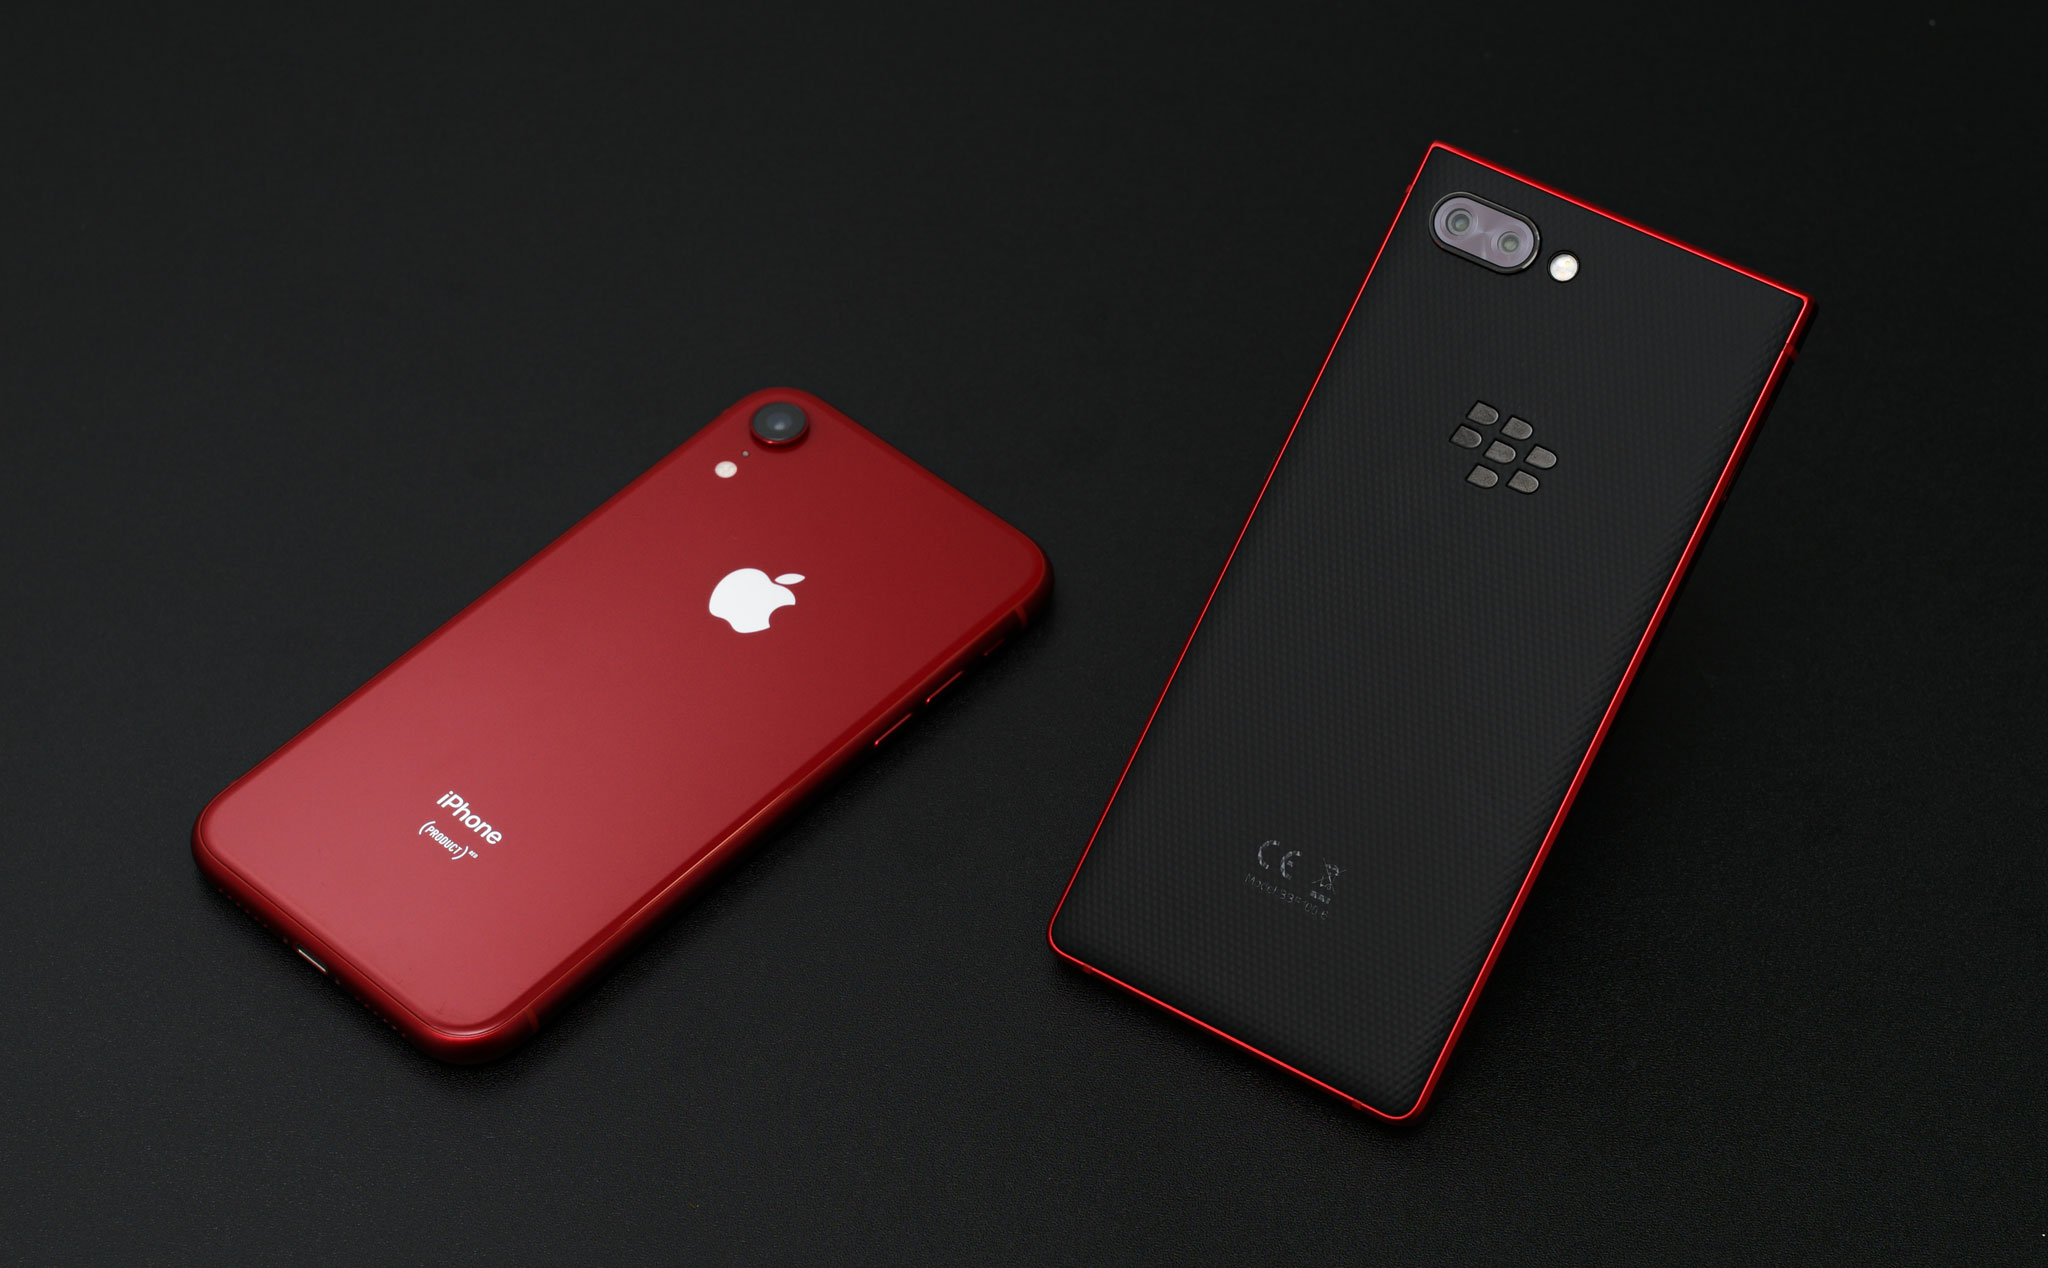 Sắm ngay chiếc iPhone XR phiên bản Product RED - màu sắc đầy sức sống và ấn tượng! Với thiết kế đẹp mắt và tính năng tuyệt vời, bạn sẽ không bao giờ hối hận khi sở hữu chiếc điện thoại siêu phẩm này. Hãy xem các hình ảnh liên quan để càng thêm tin tưởng vào sản phẩm này nhé!